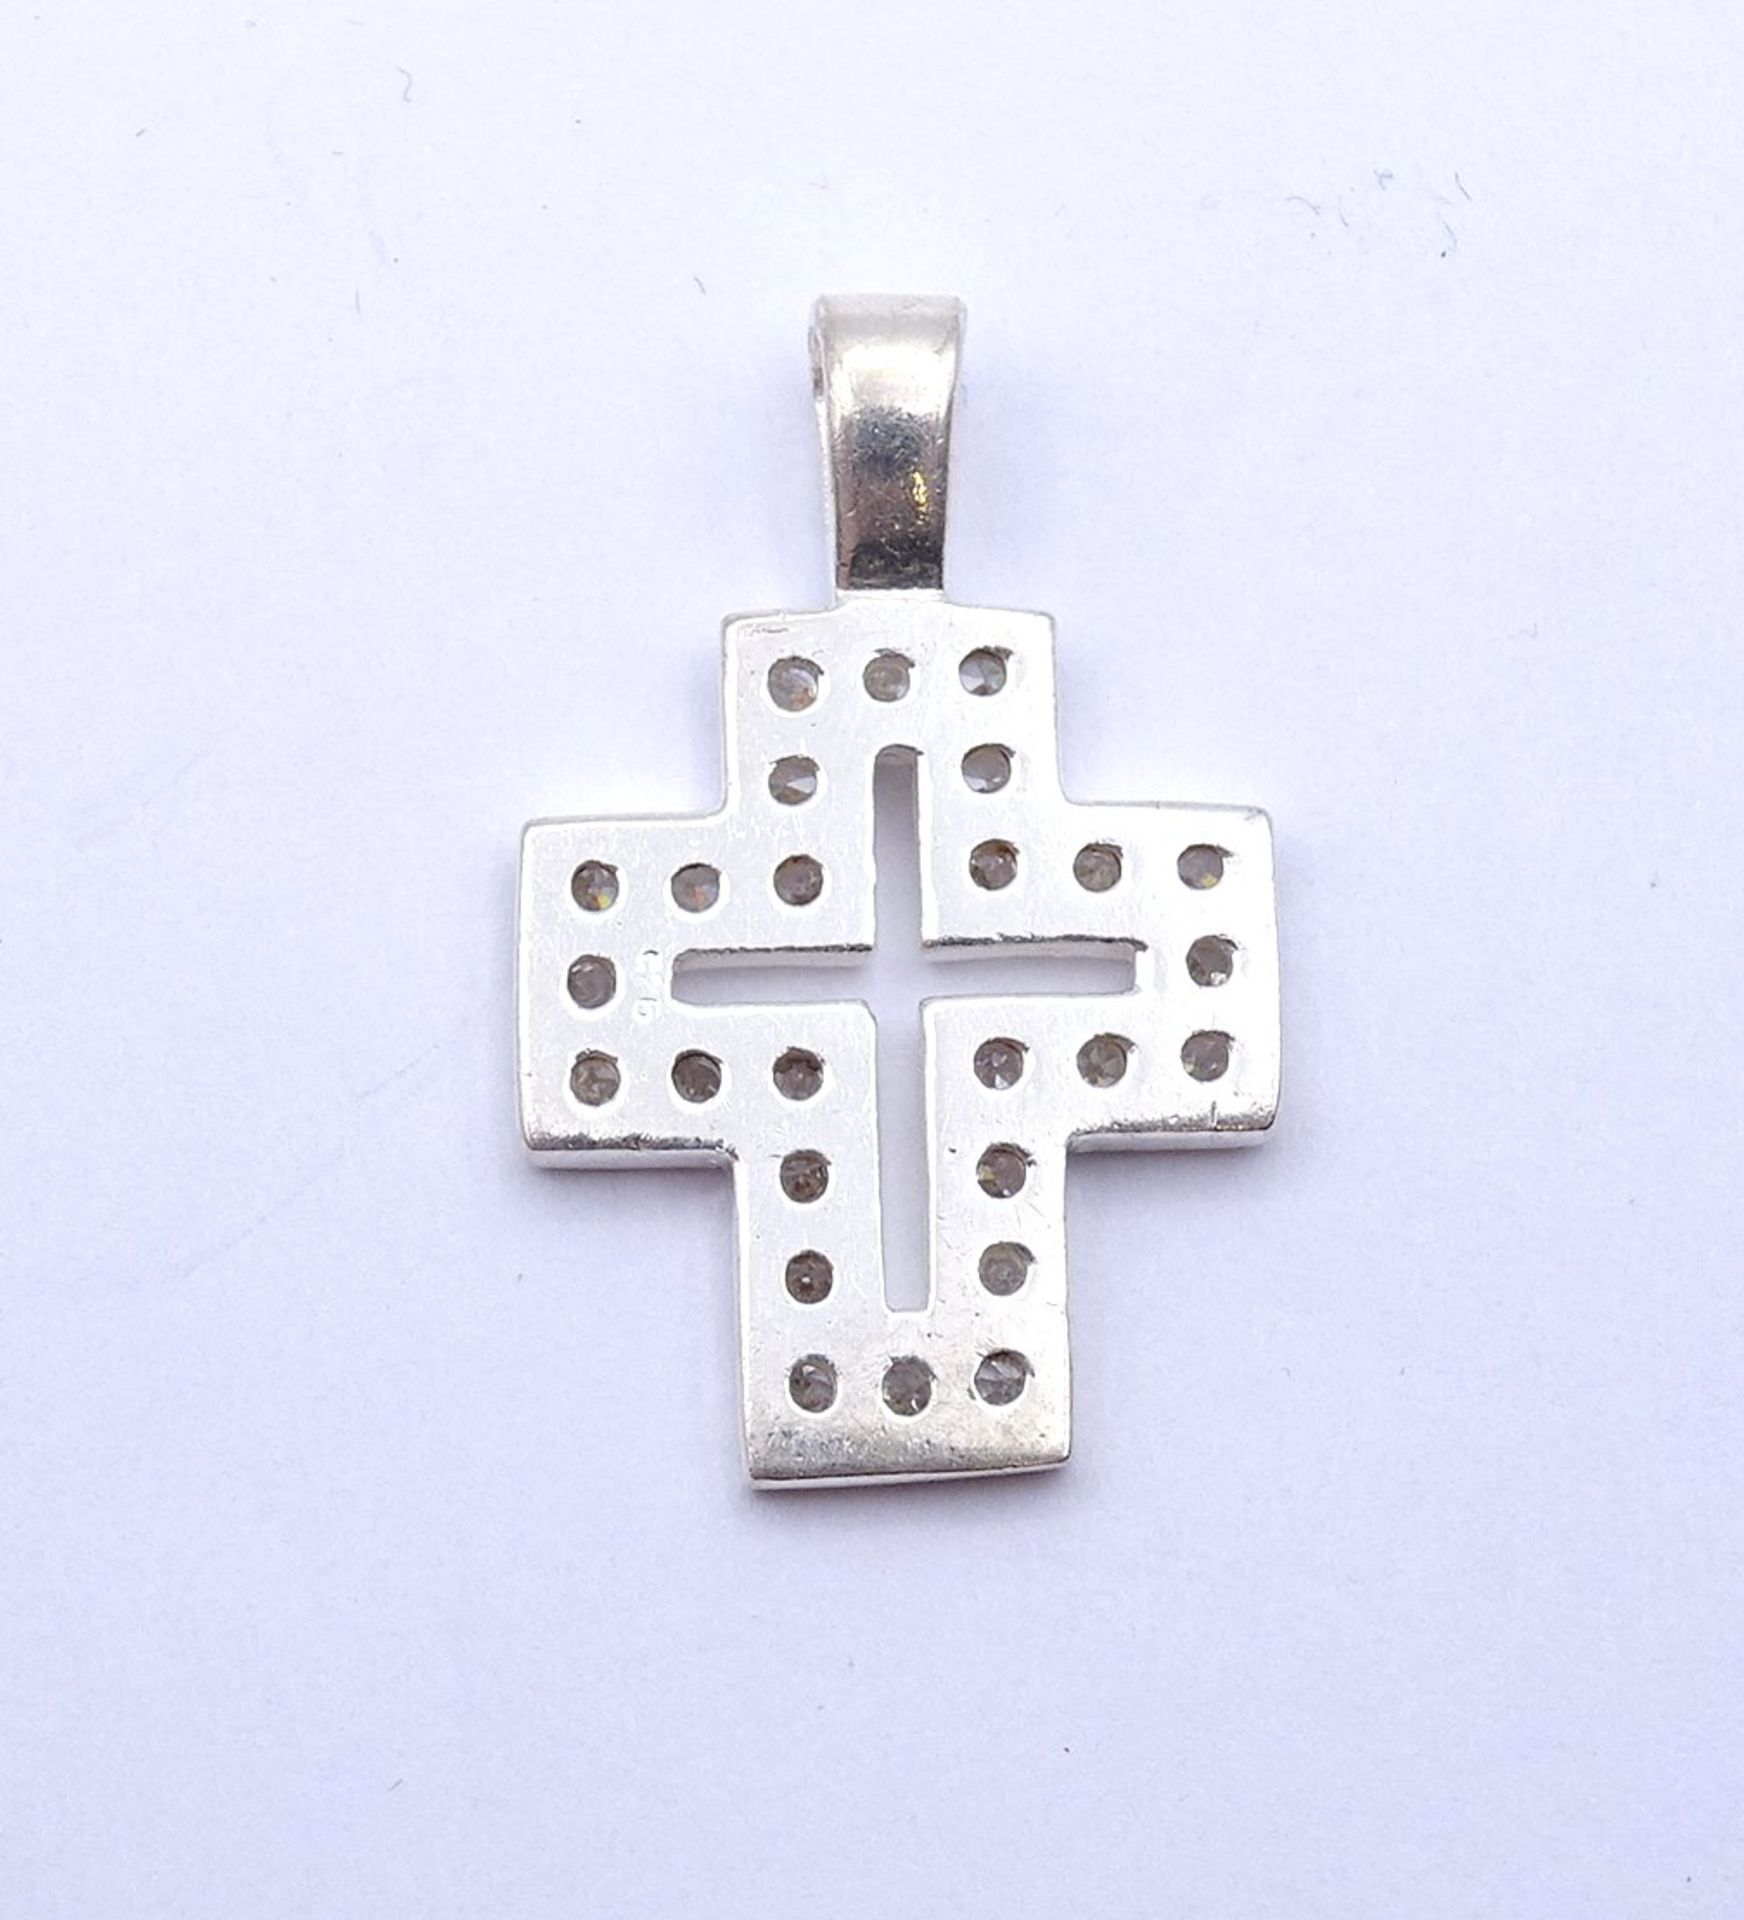 925er Silber Kreuz Anhänger, L. 3,1cm, 5,2g. - Image 2 of 2